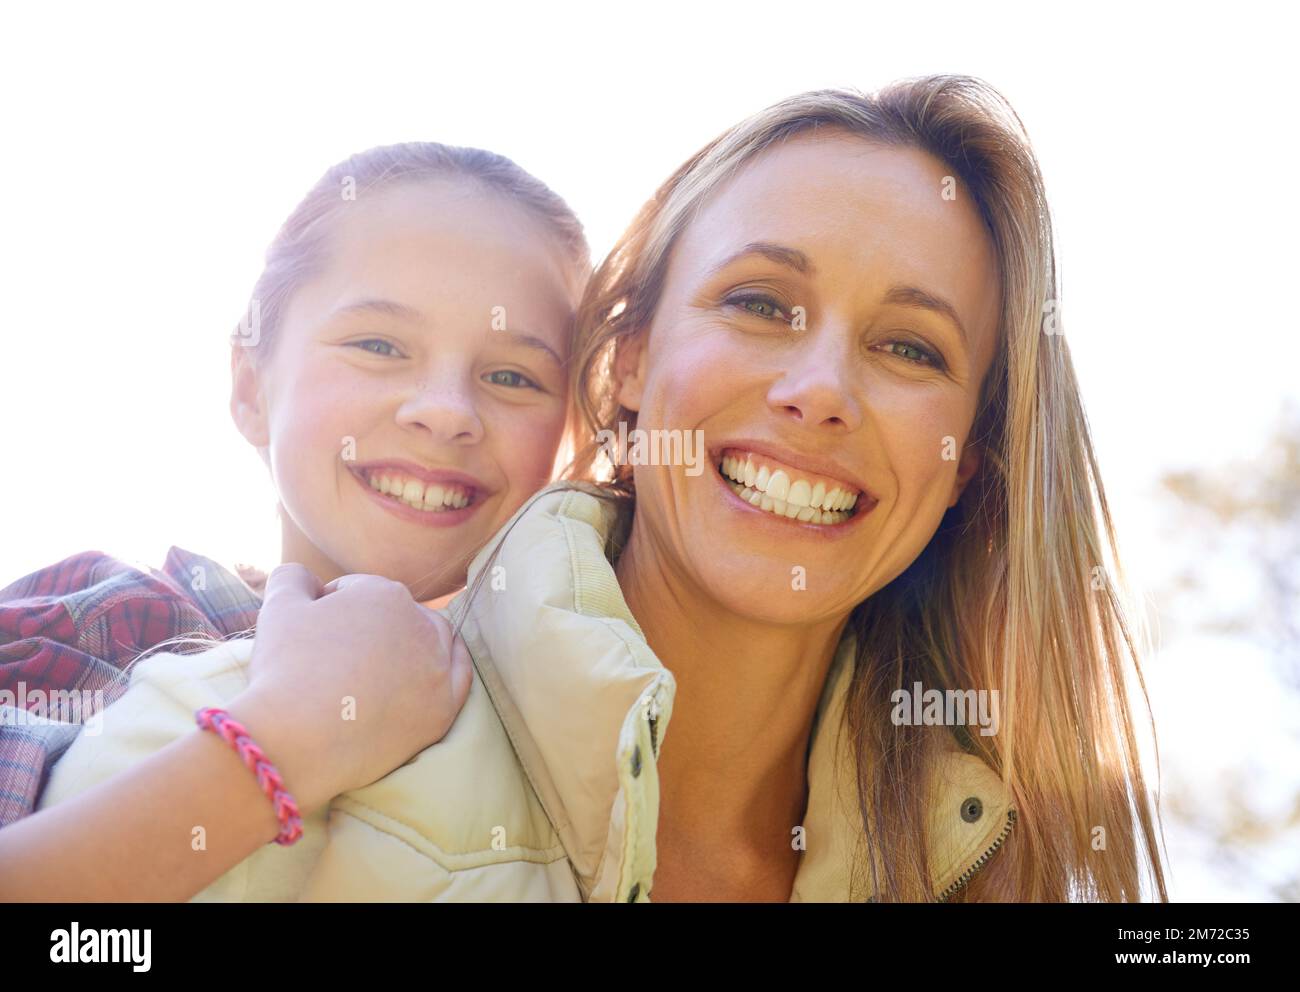 Genießen Sie alltägliche Momente. Eine glückliche Mutter und Tochter, die Zeit zusammen im Freien verbringen. Stockfoto